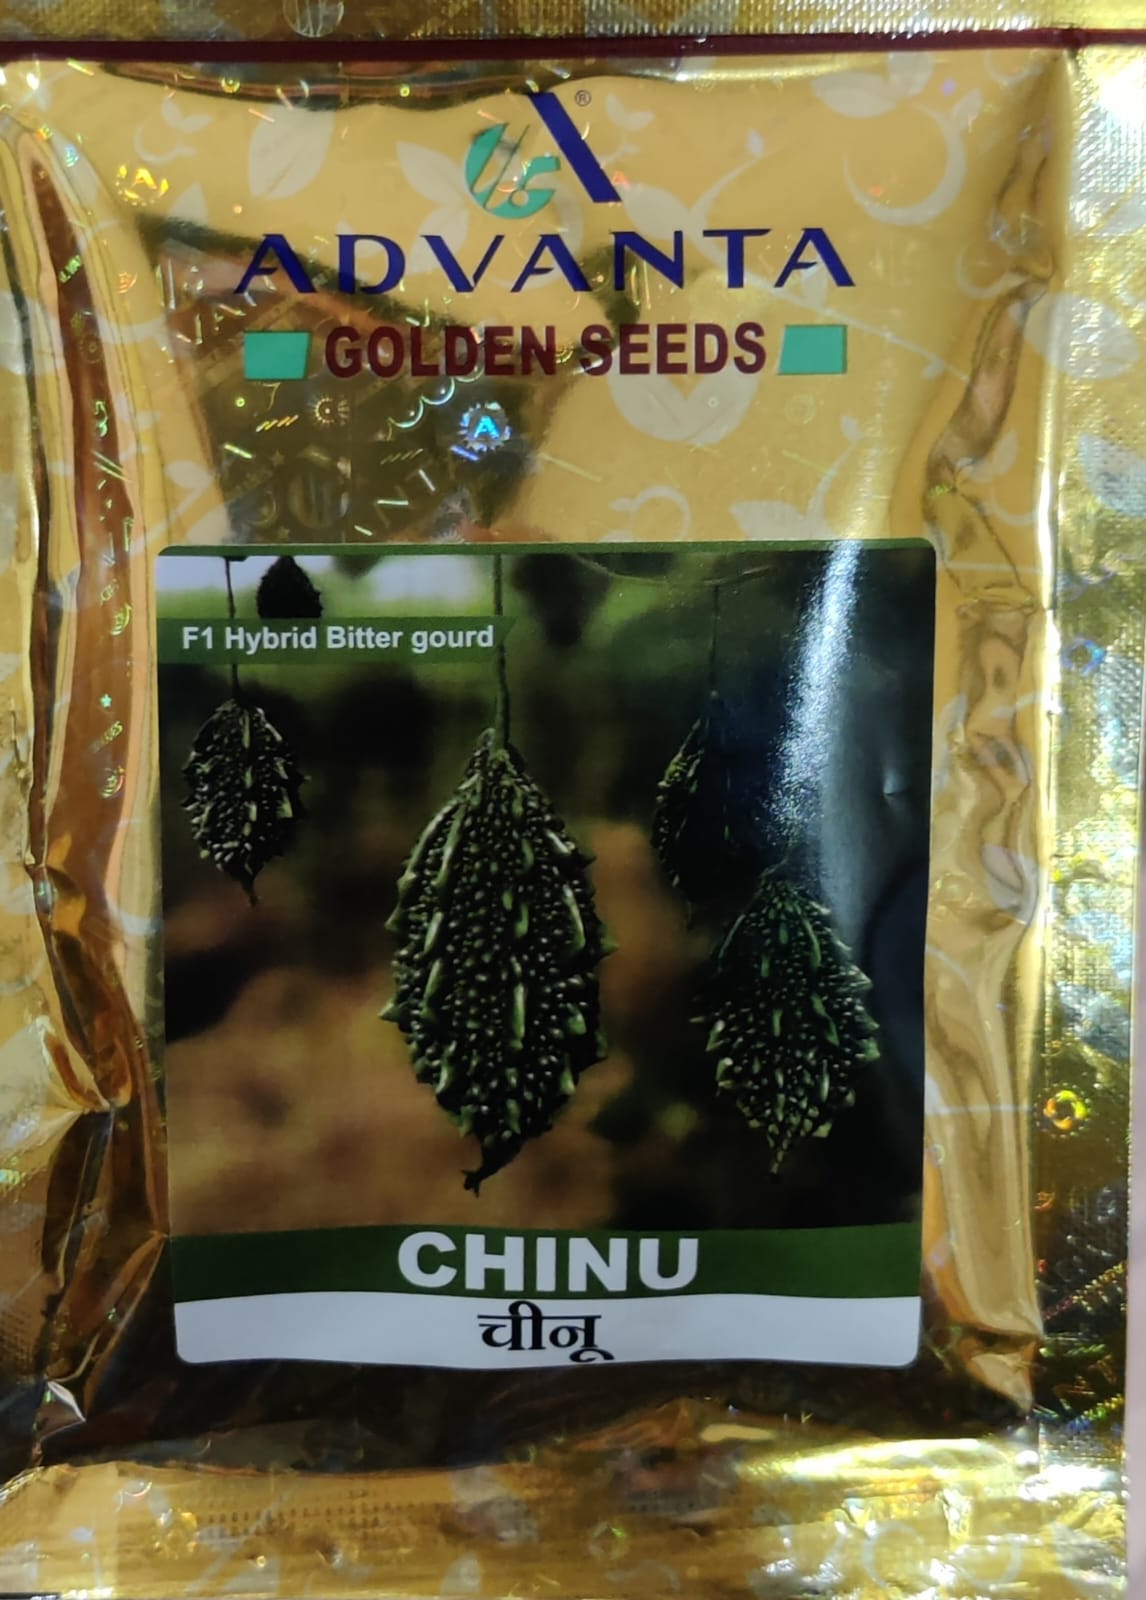 Bitter Gourd Chinu (Advanta Golden Seeds)